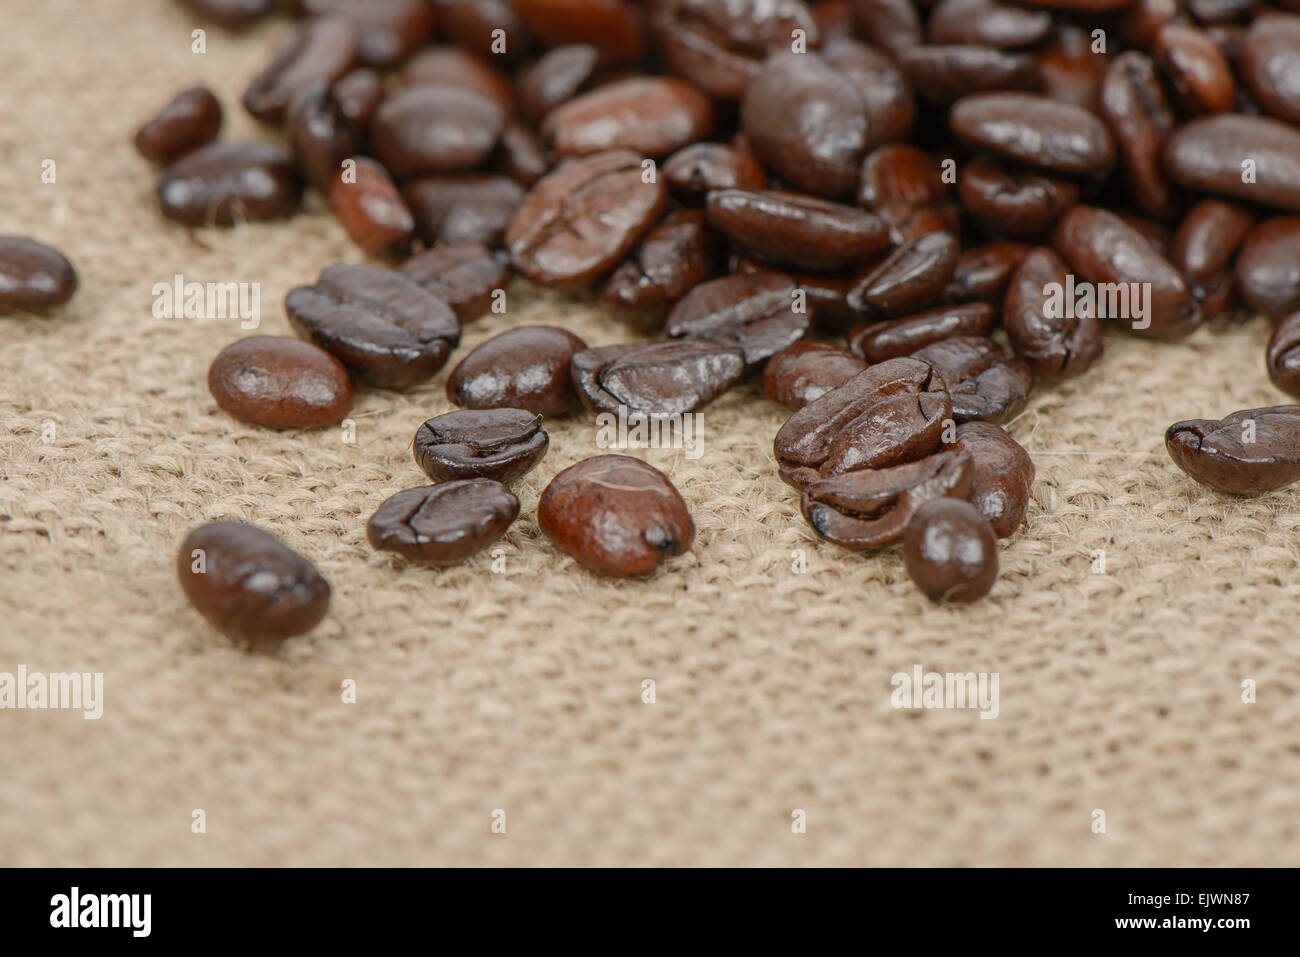 Primer plano de café tostado en grano en un saco de tela Foto de stock